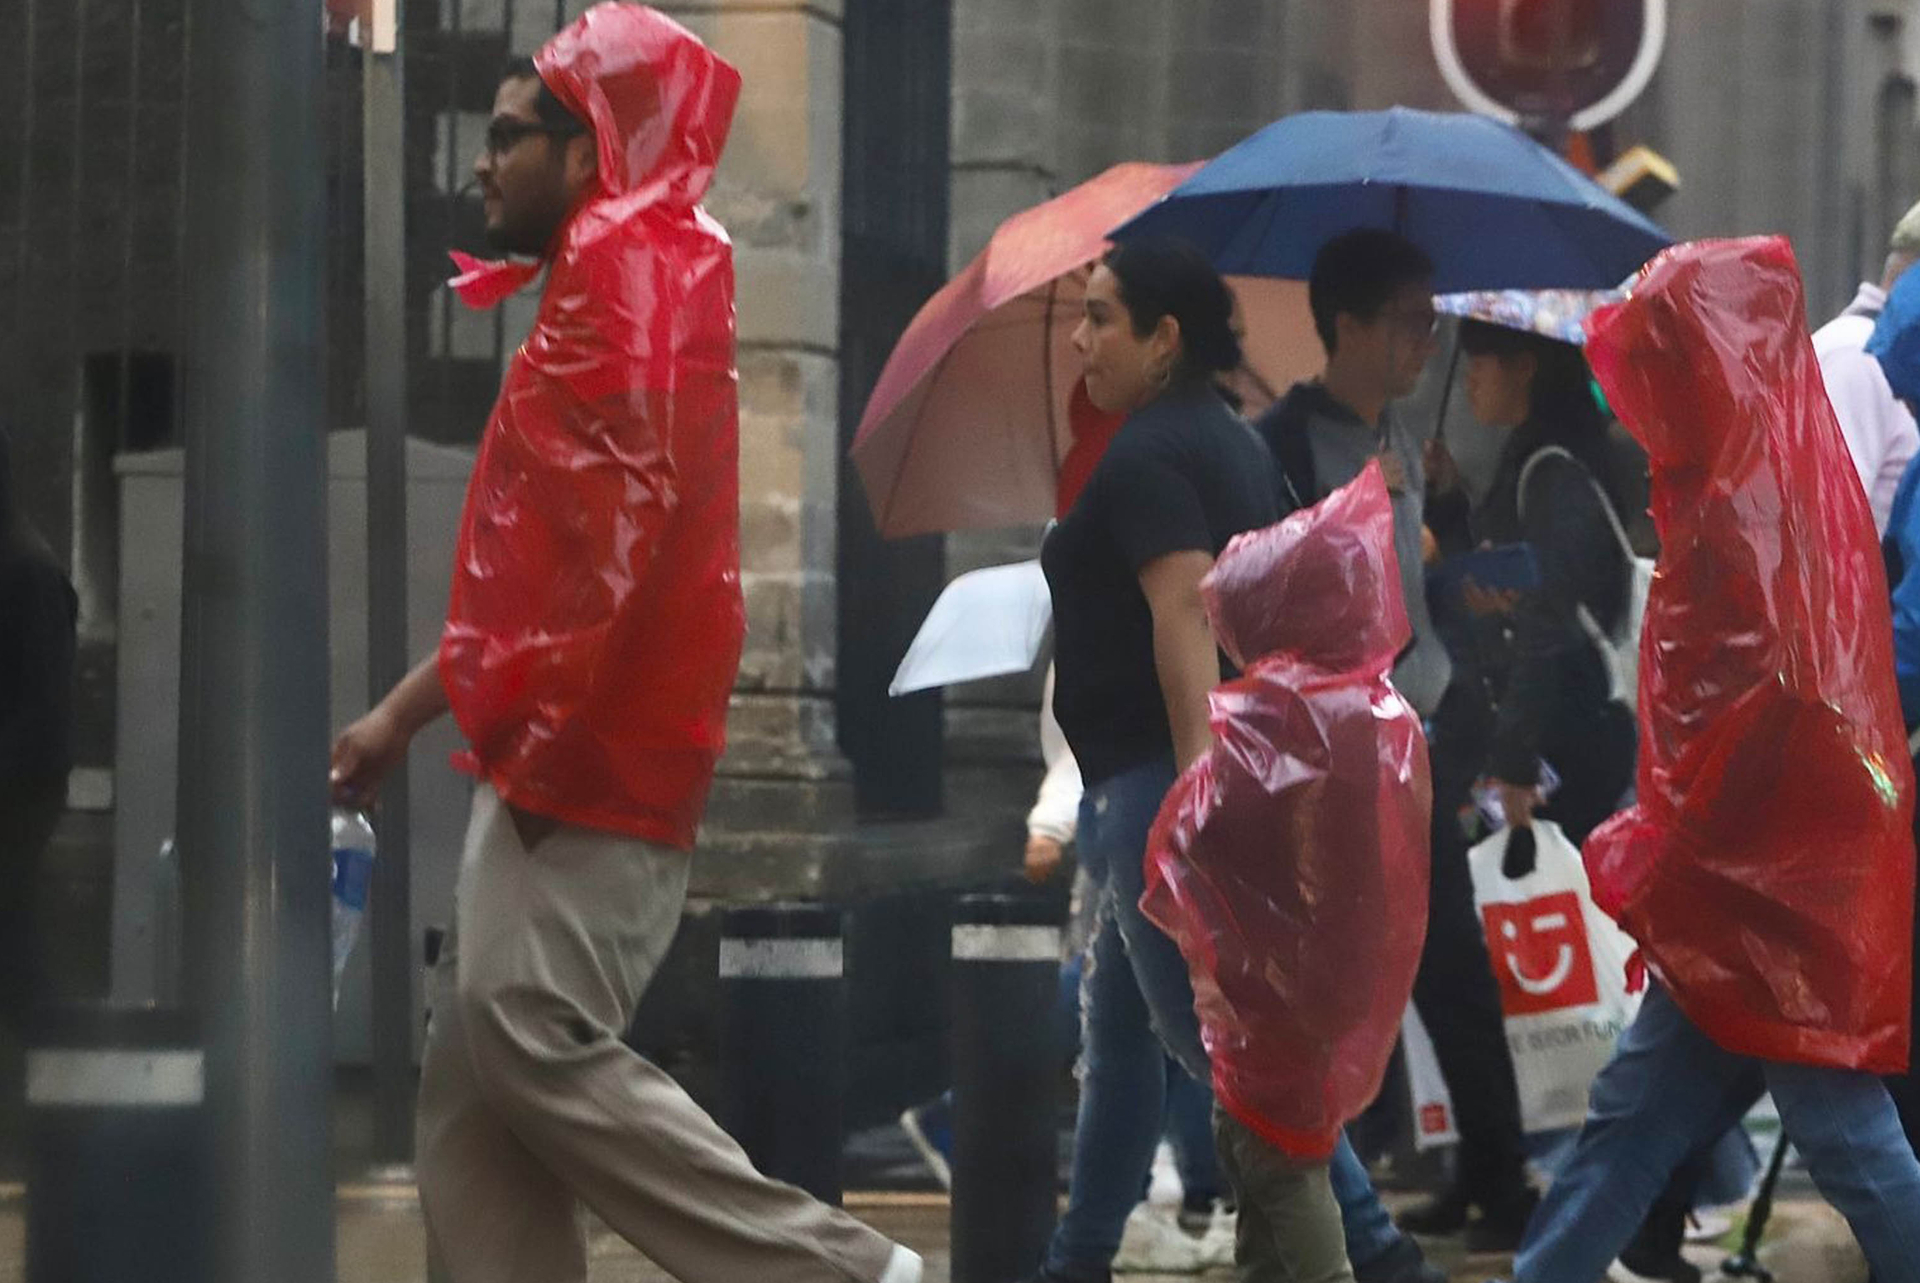 Para este jueves 21 de septiembre se pronostican lluvias puntuales fuertes en 5 estados: Nayarit, Colima, Jalisco, Oaxaca y Chiapas.